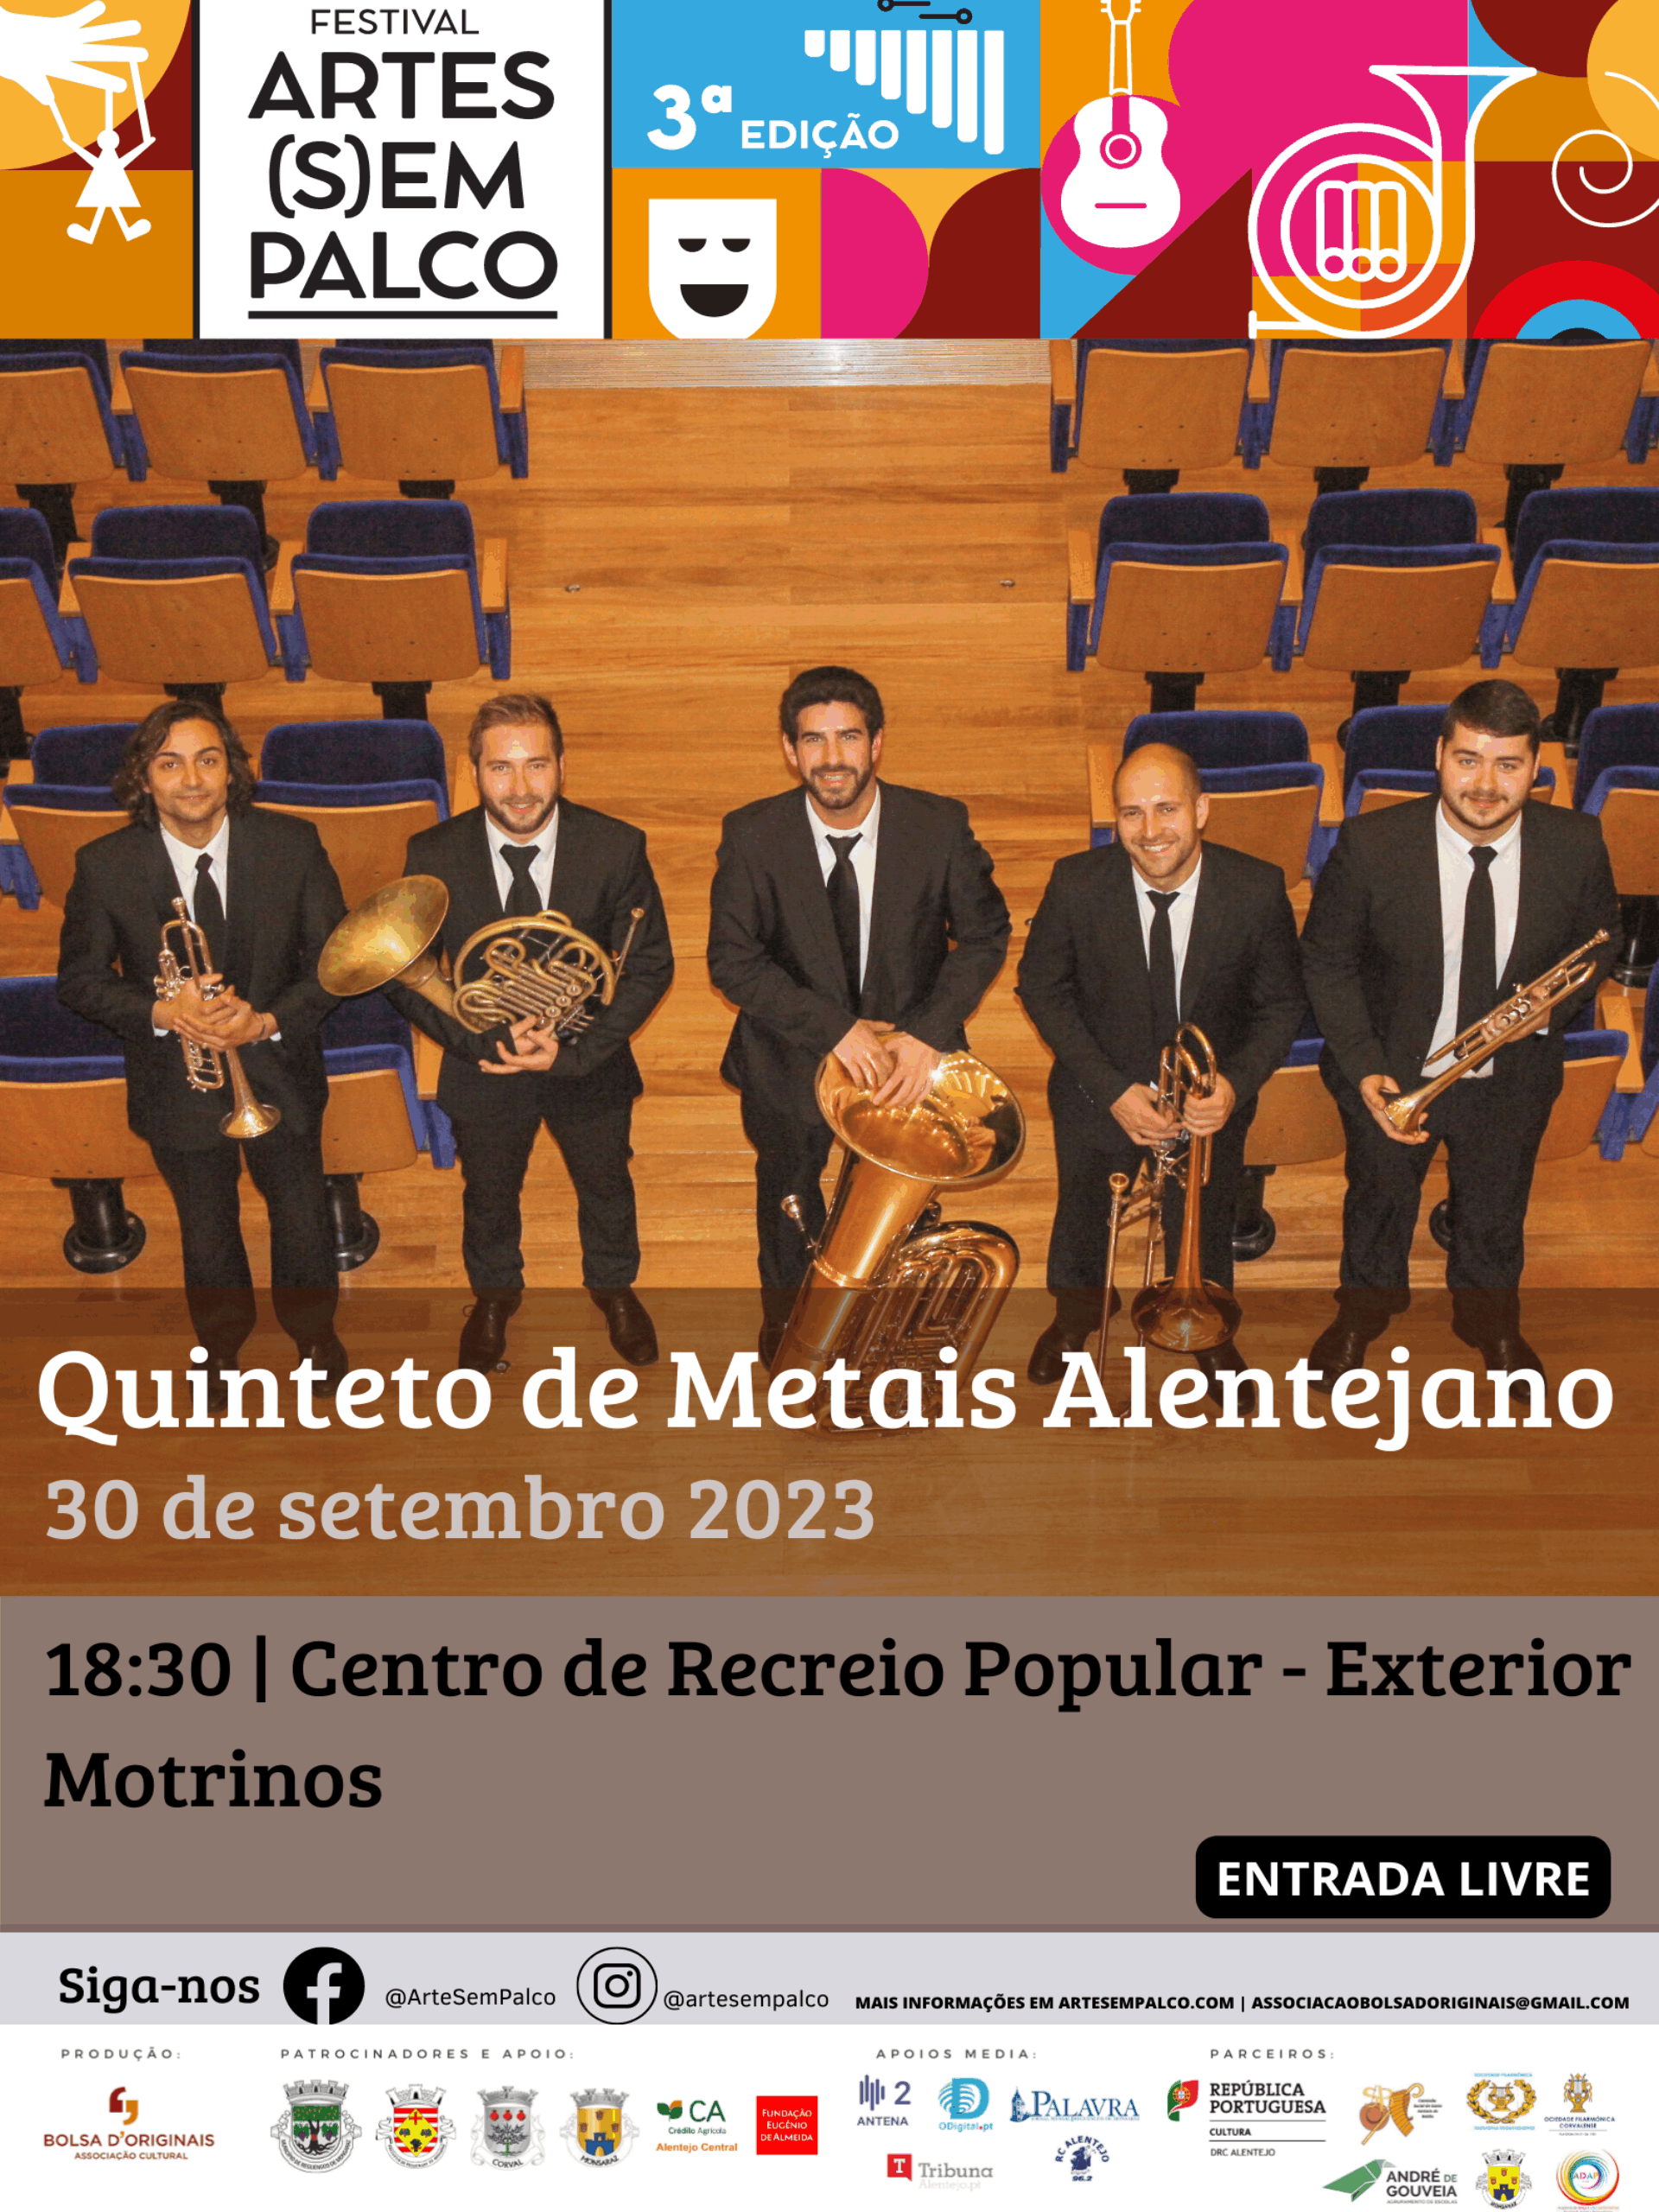 Quinteto de Metais Alentejano | Festival Arte(s)em Palco | 30 setembro